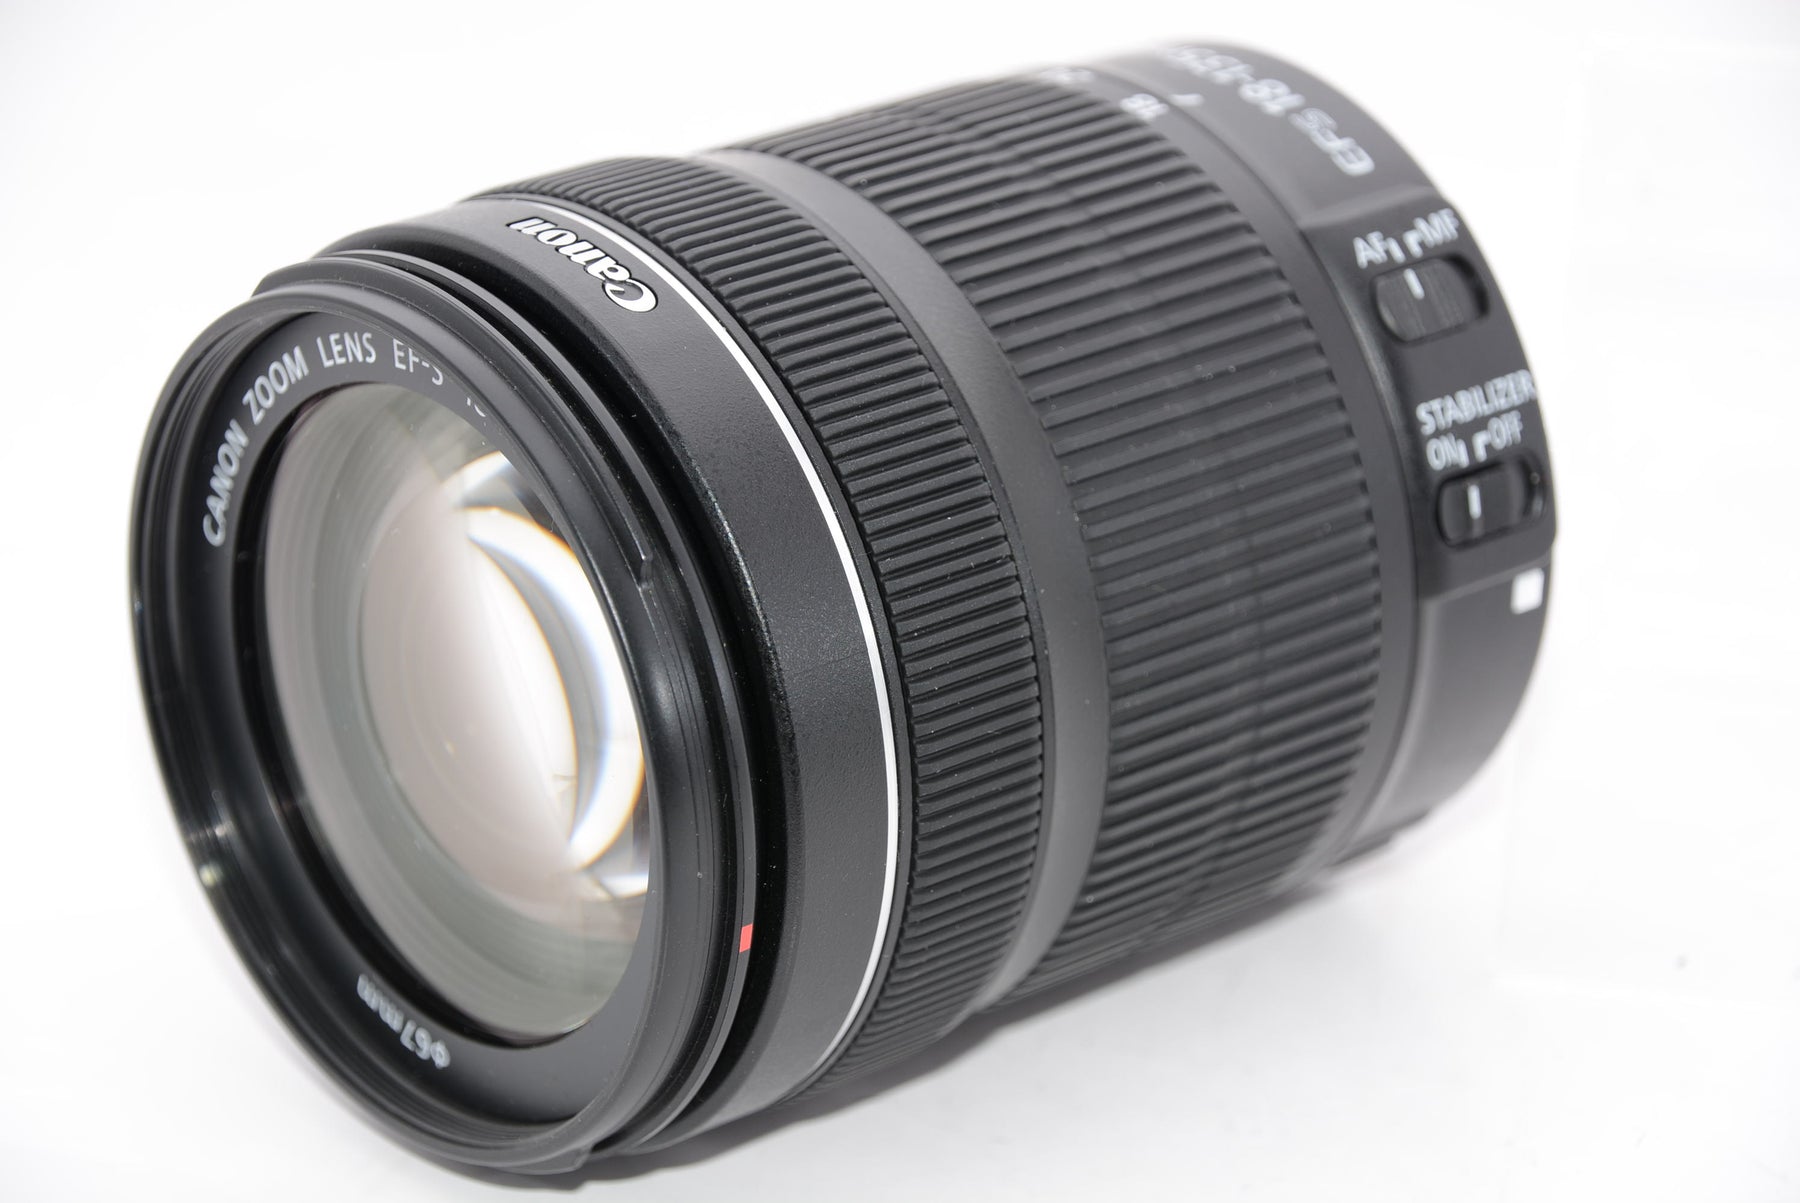 【外観特上級】Canon デジタル一眼レフカメラ EOS 8000D レンズキット EF-S18-135mm F3.5-5.6 IS STM 付属  EOS8000D18135ISSTMLK